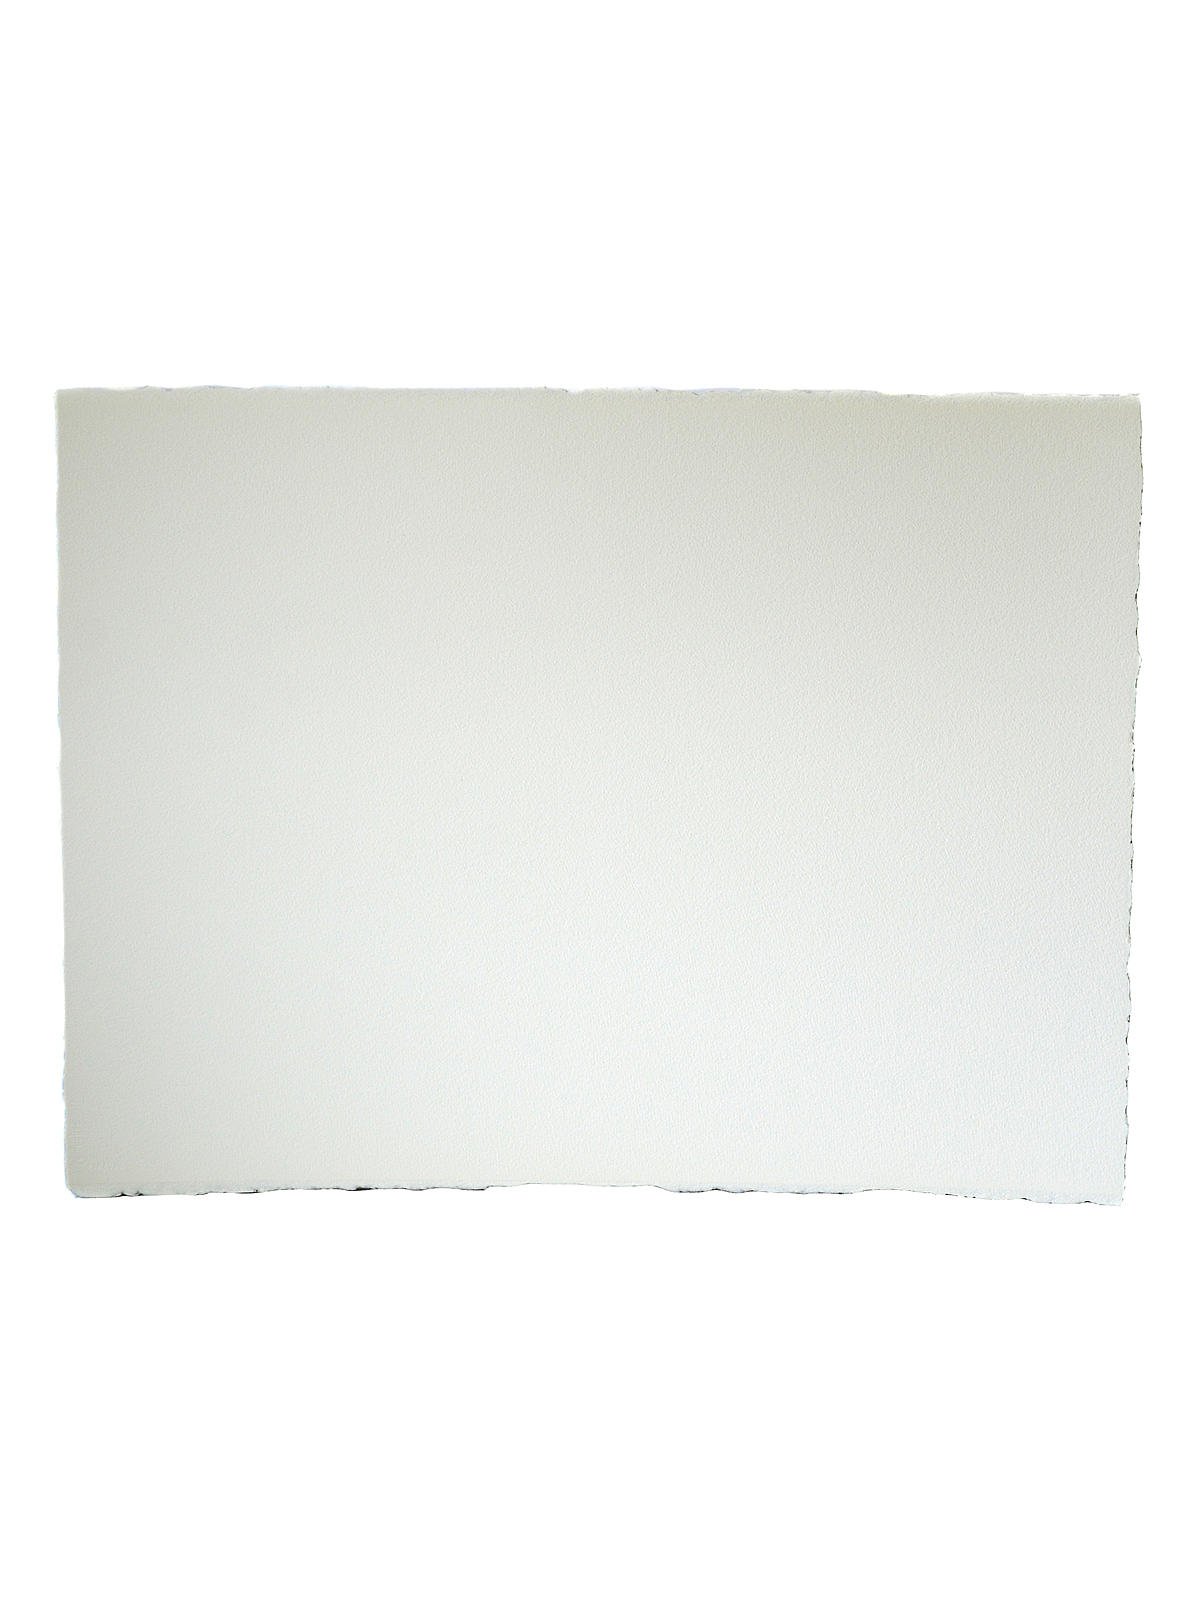 Bright White Watercolor Paper - 140 lb. Cold Press, 22 x 30, 5